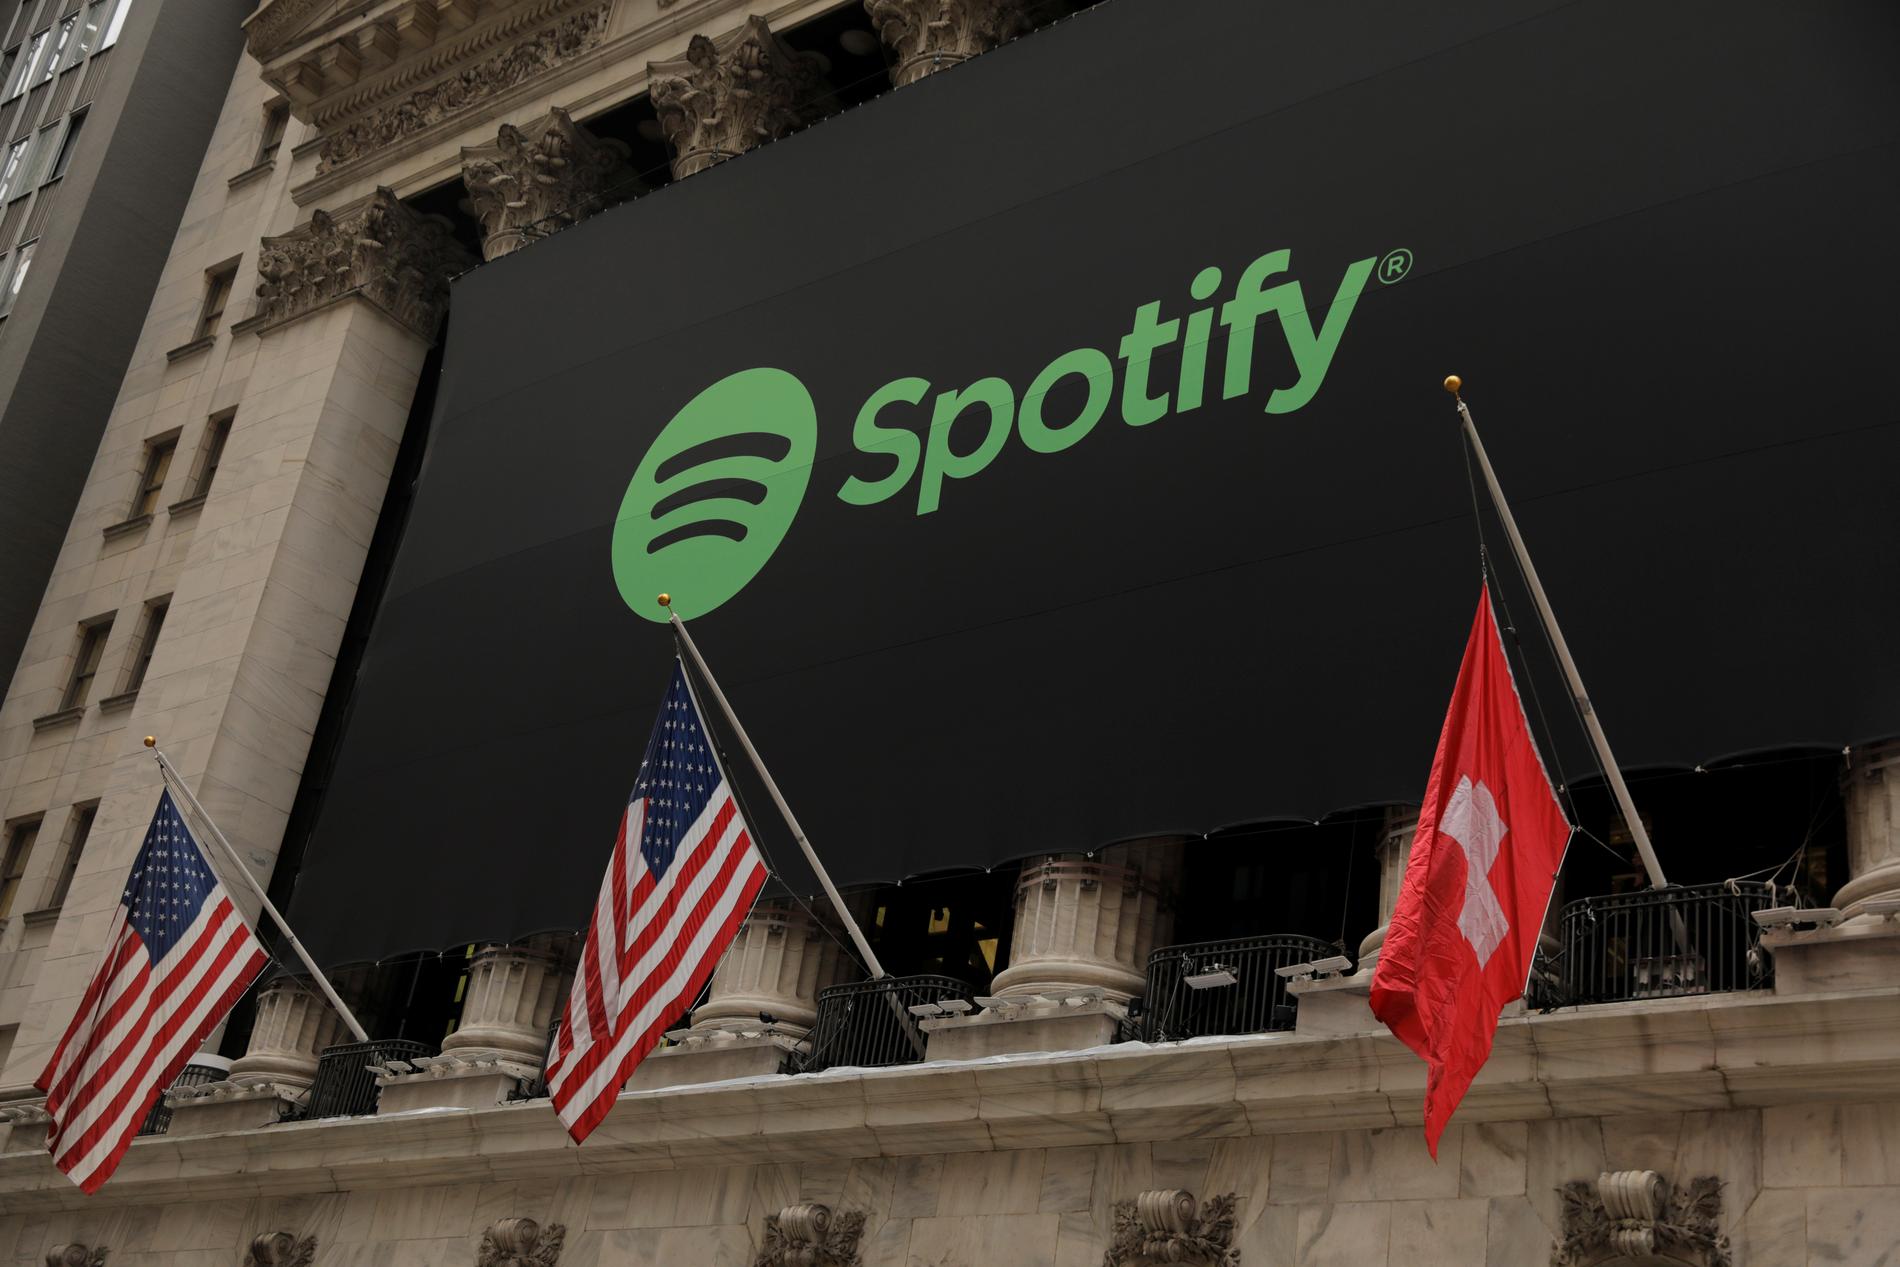 Den schweiziska flaggan hissades felaktigt när Spotify börsintroducerades. Missen åtgärdades dock snabbt.